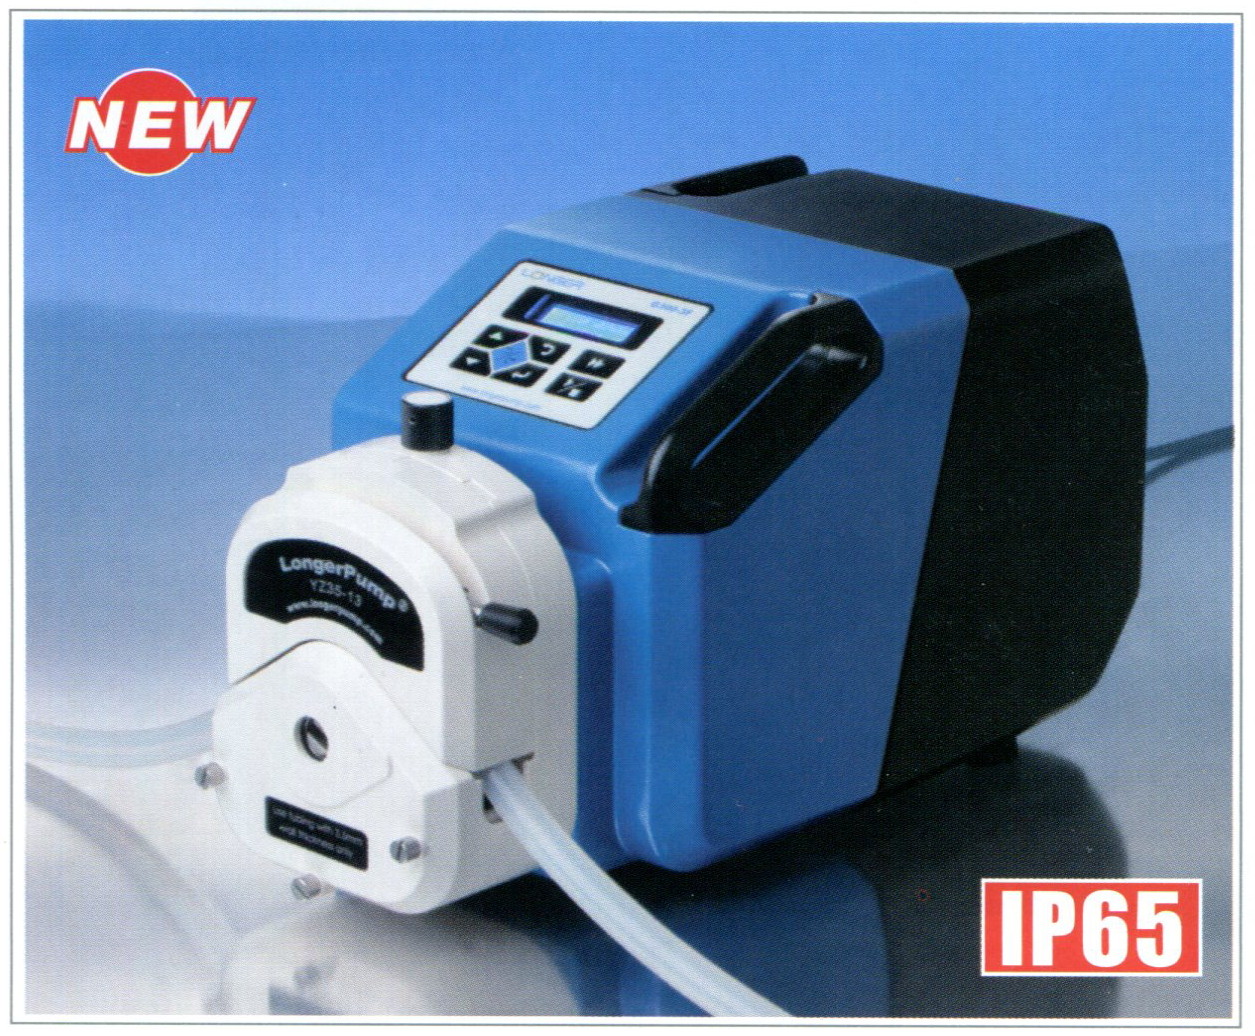 Longer pump, Peristaltic pump, G300-3F